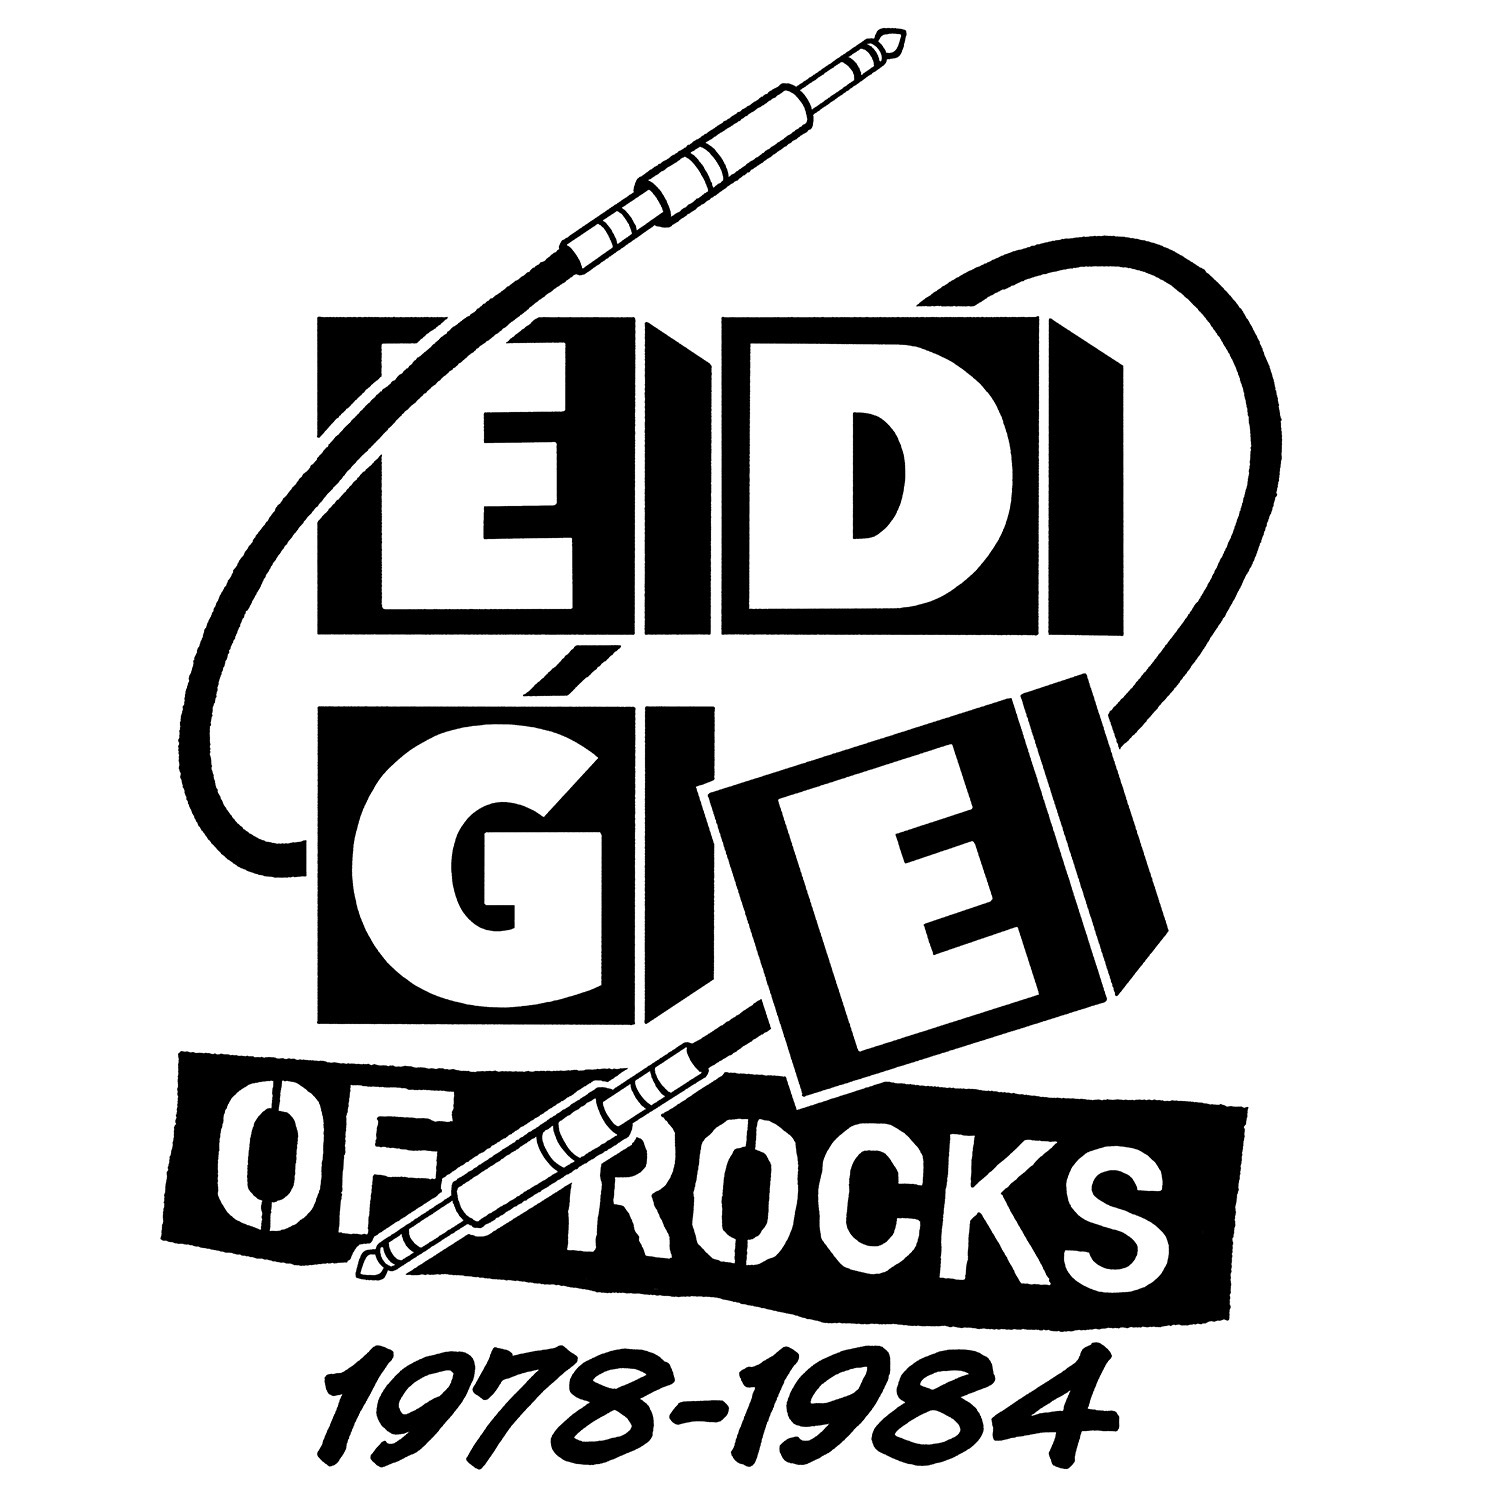 最も尖端的で創造性の高い時代、洋楽ロック変革期のデザイン展
ART in MUSIC「EDGE OF ROCKS 1978-1984」　
BAG-Brillia Art Gallery-にて7月13日(土)より開催